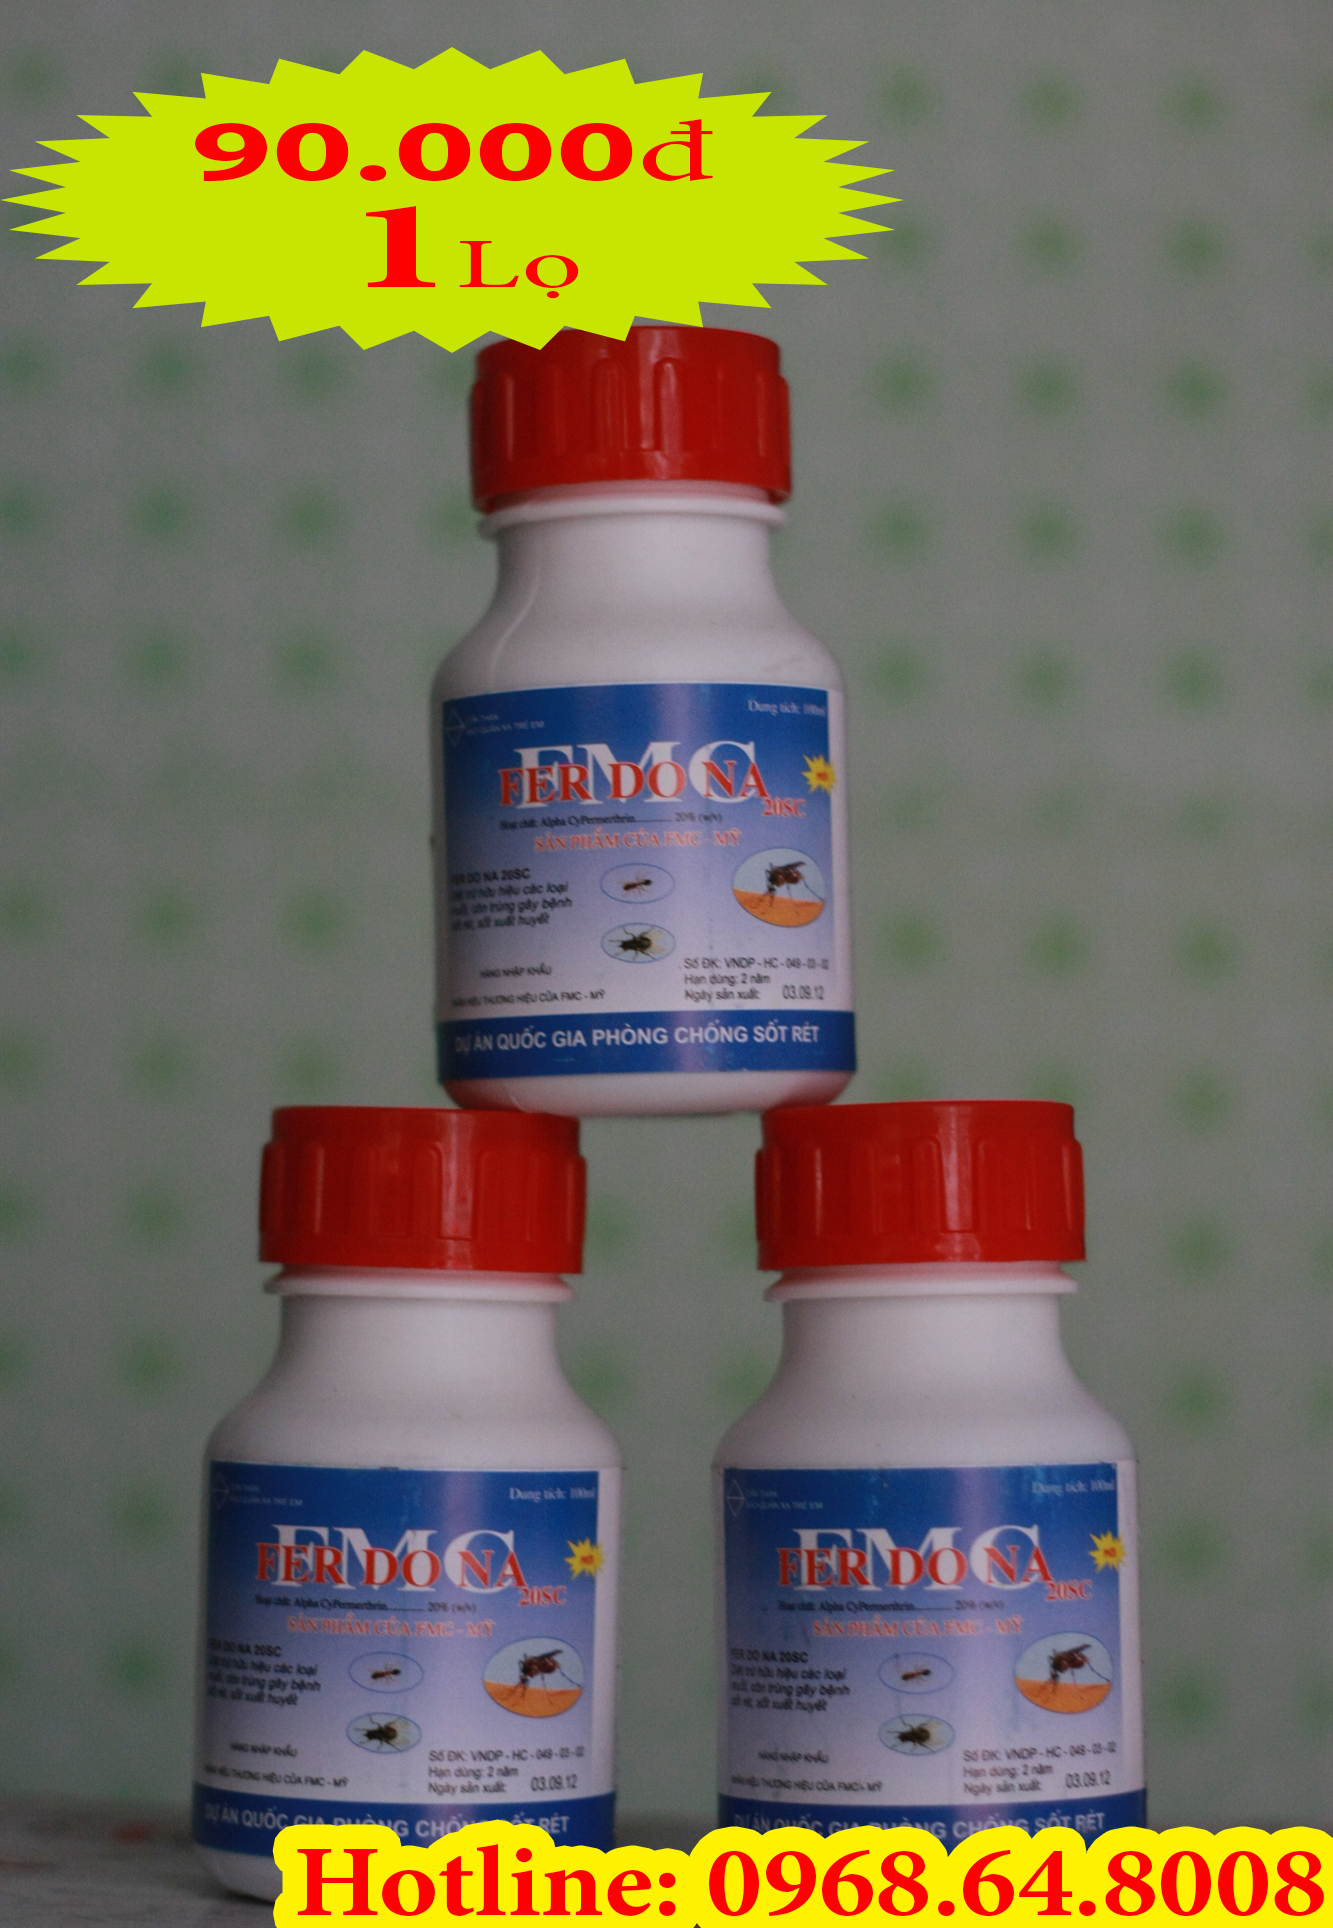 Ferdona FMC 20SC (100ml) - (Hàng của MỸ) - Thuốc diệt côn trùng, muỗi, gián, ruồi, kiến, bọ chét...